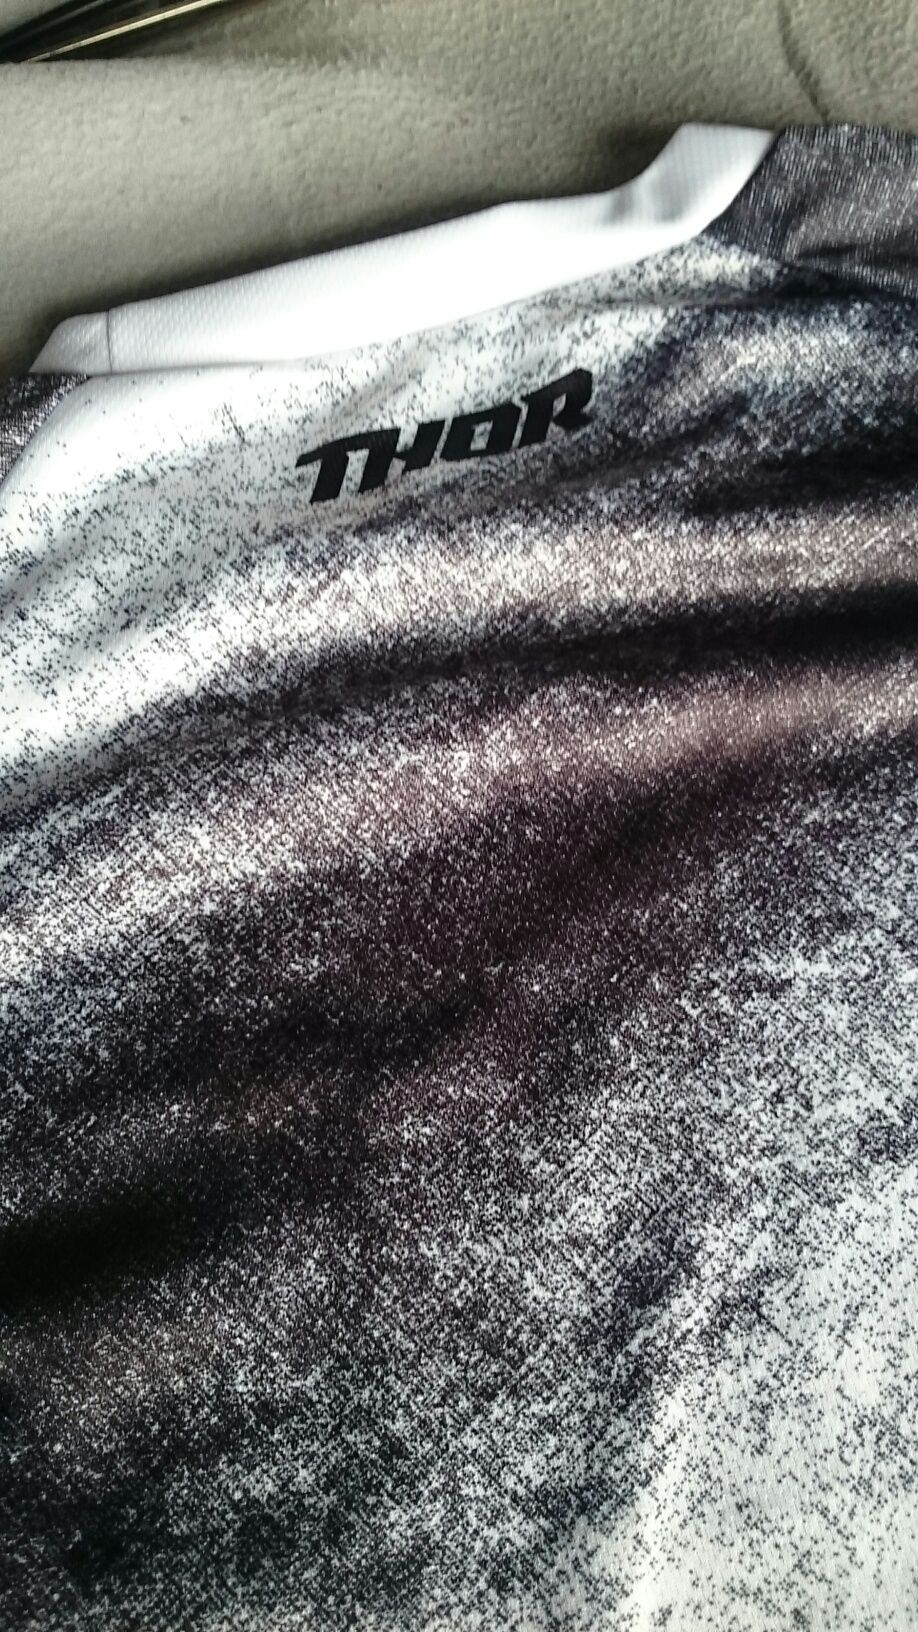 Bluza spodnie strój Thor enduro cross kład Fox L XL XXL 34 36 38 nowe